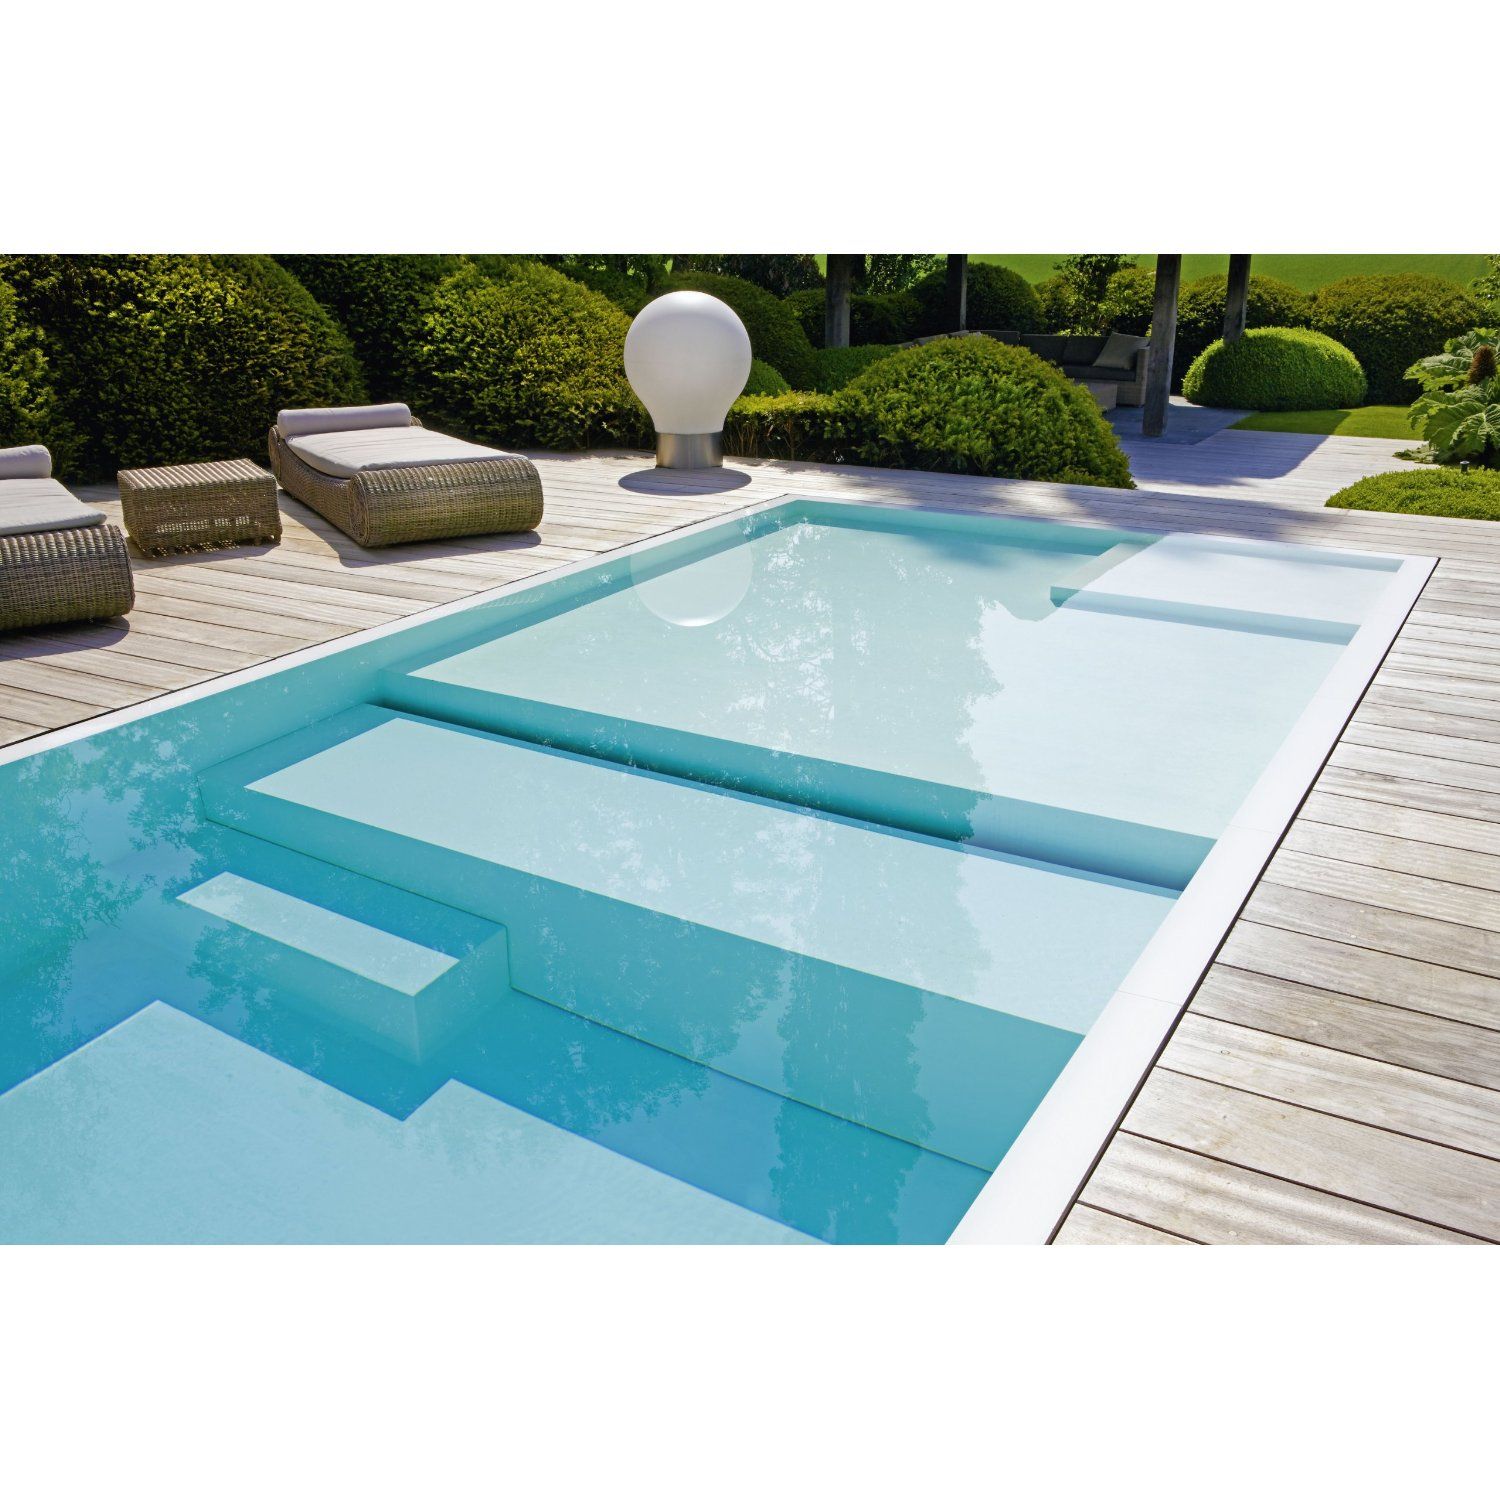 Pool Ideen Garten Inspirierend 532 Best Pool Aqua Splash Images In 2020